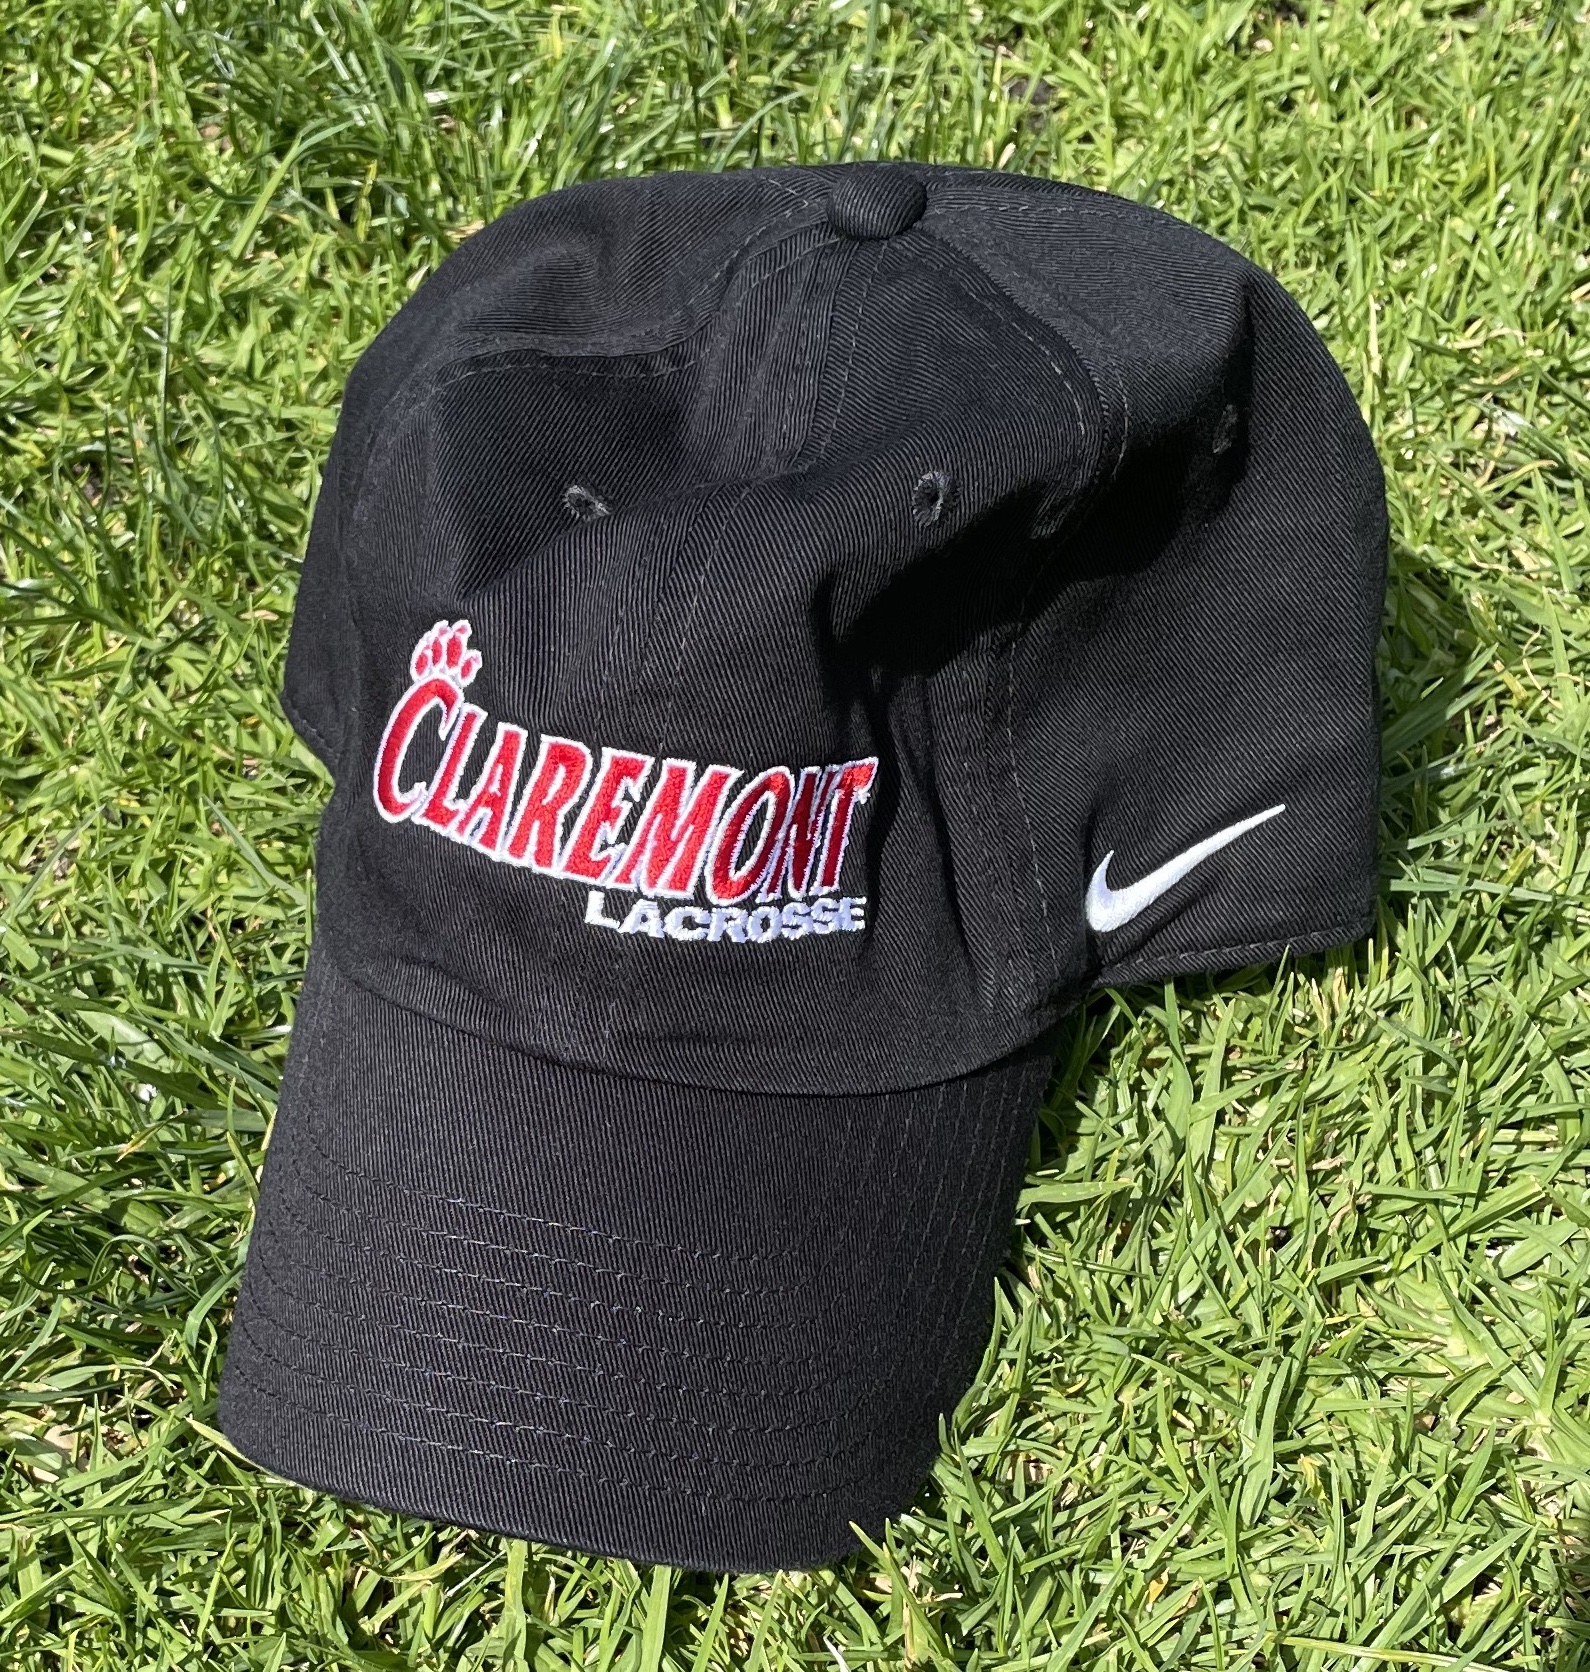 Black Claremont Lacrosse Cap